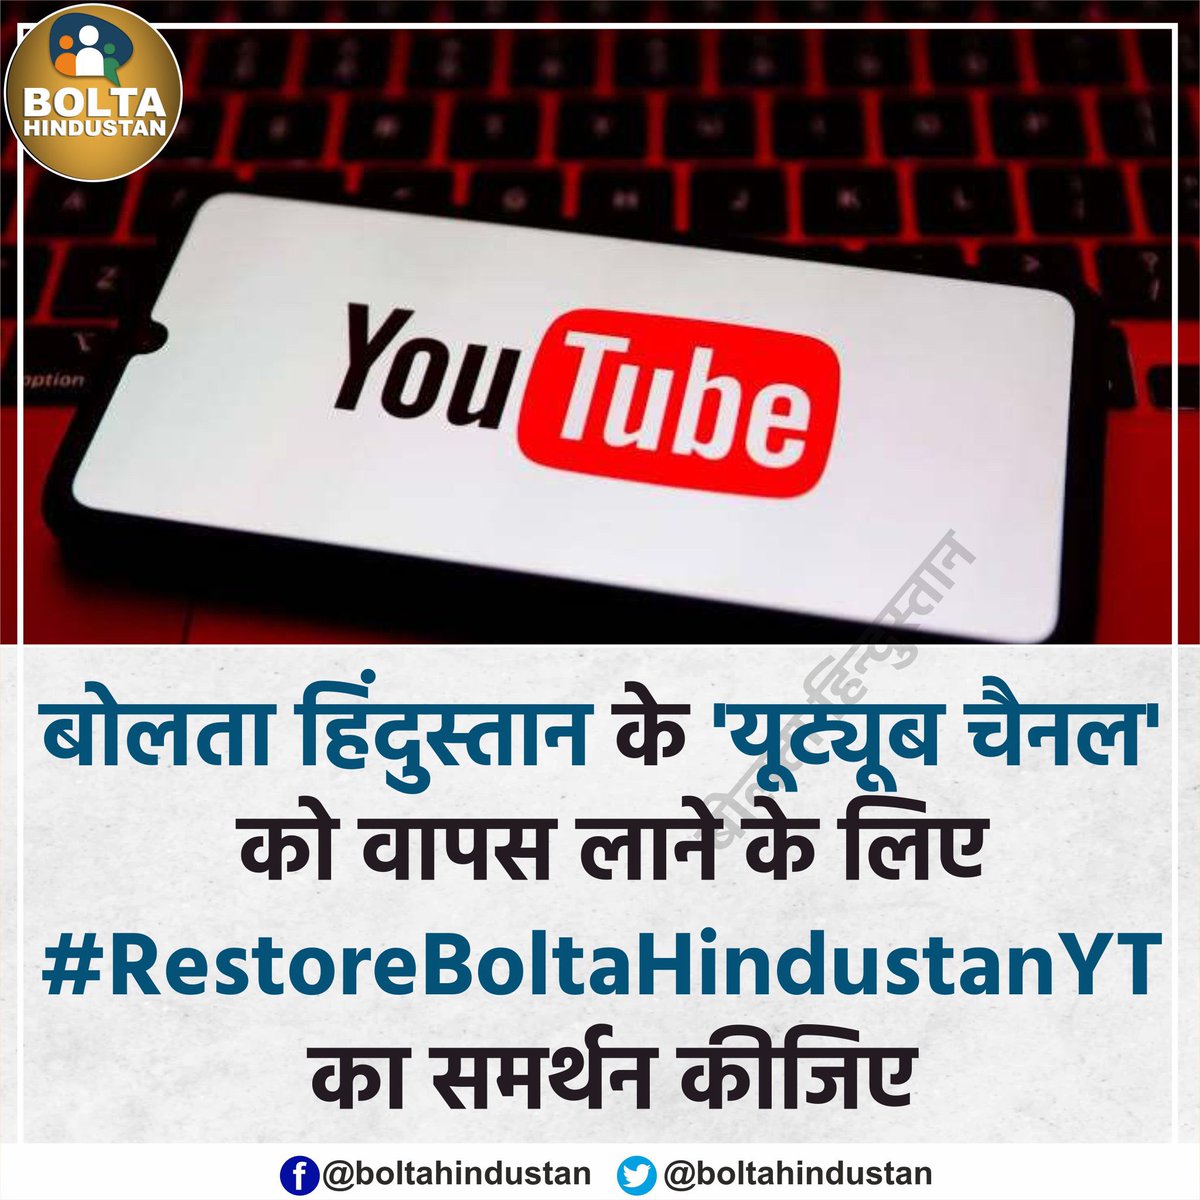 'बोलता हिंदुस्तान' का यूट्यूब चैनल बंद कर दिया है जो लगातार जनता के मुद्दे उठाता था सभी लोग #RestoreBoltaHindustanYT पर ट्वीट करके इस रिस्टोर करने की मांग करे